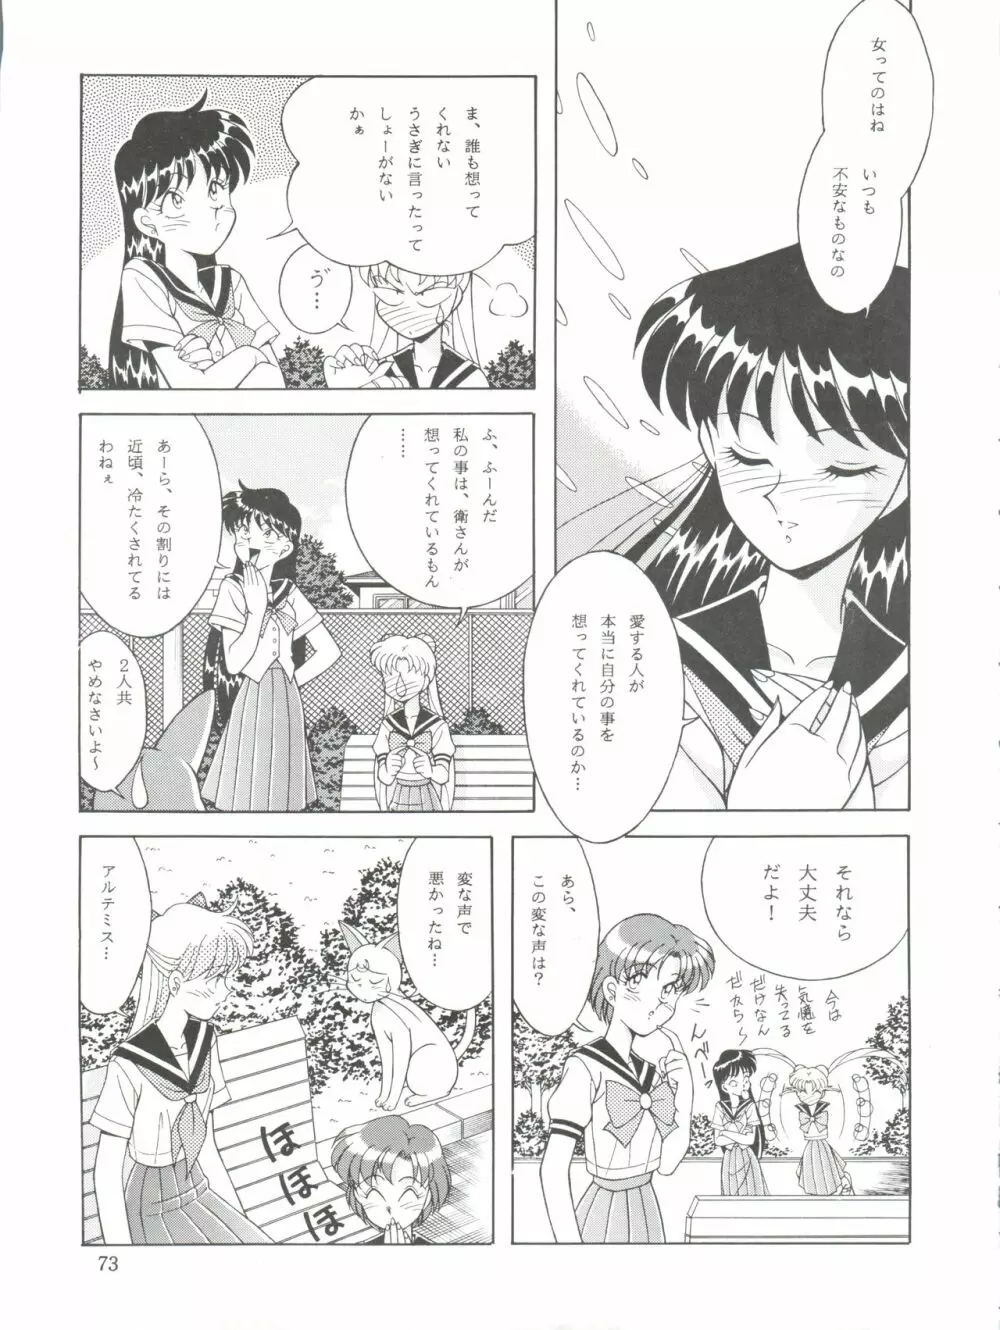 NANIWA-YA FINAL DRESS UP! - page73